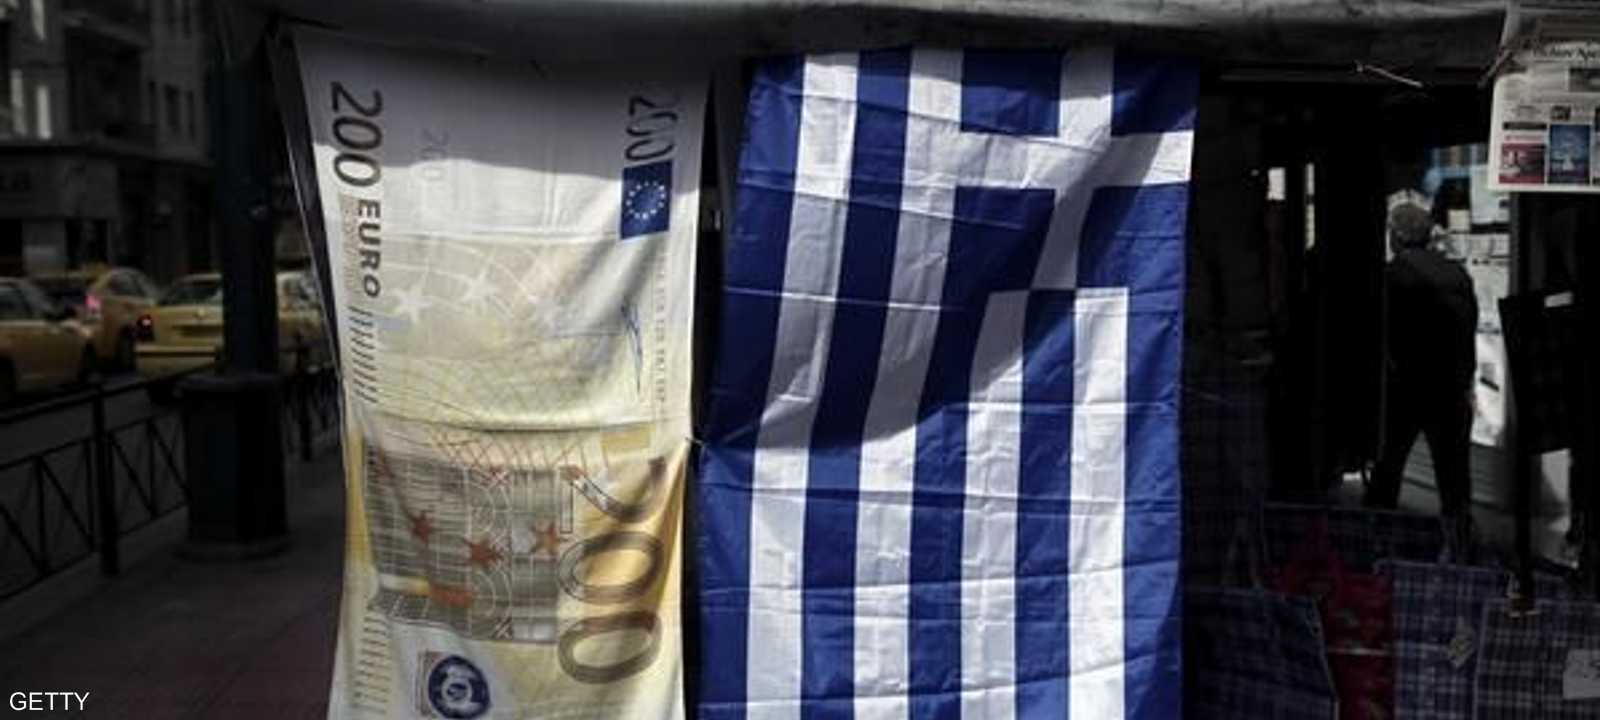 تواجه اليونان أزمة اقتصادية منذ سنوات.